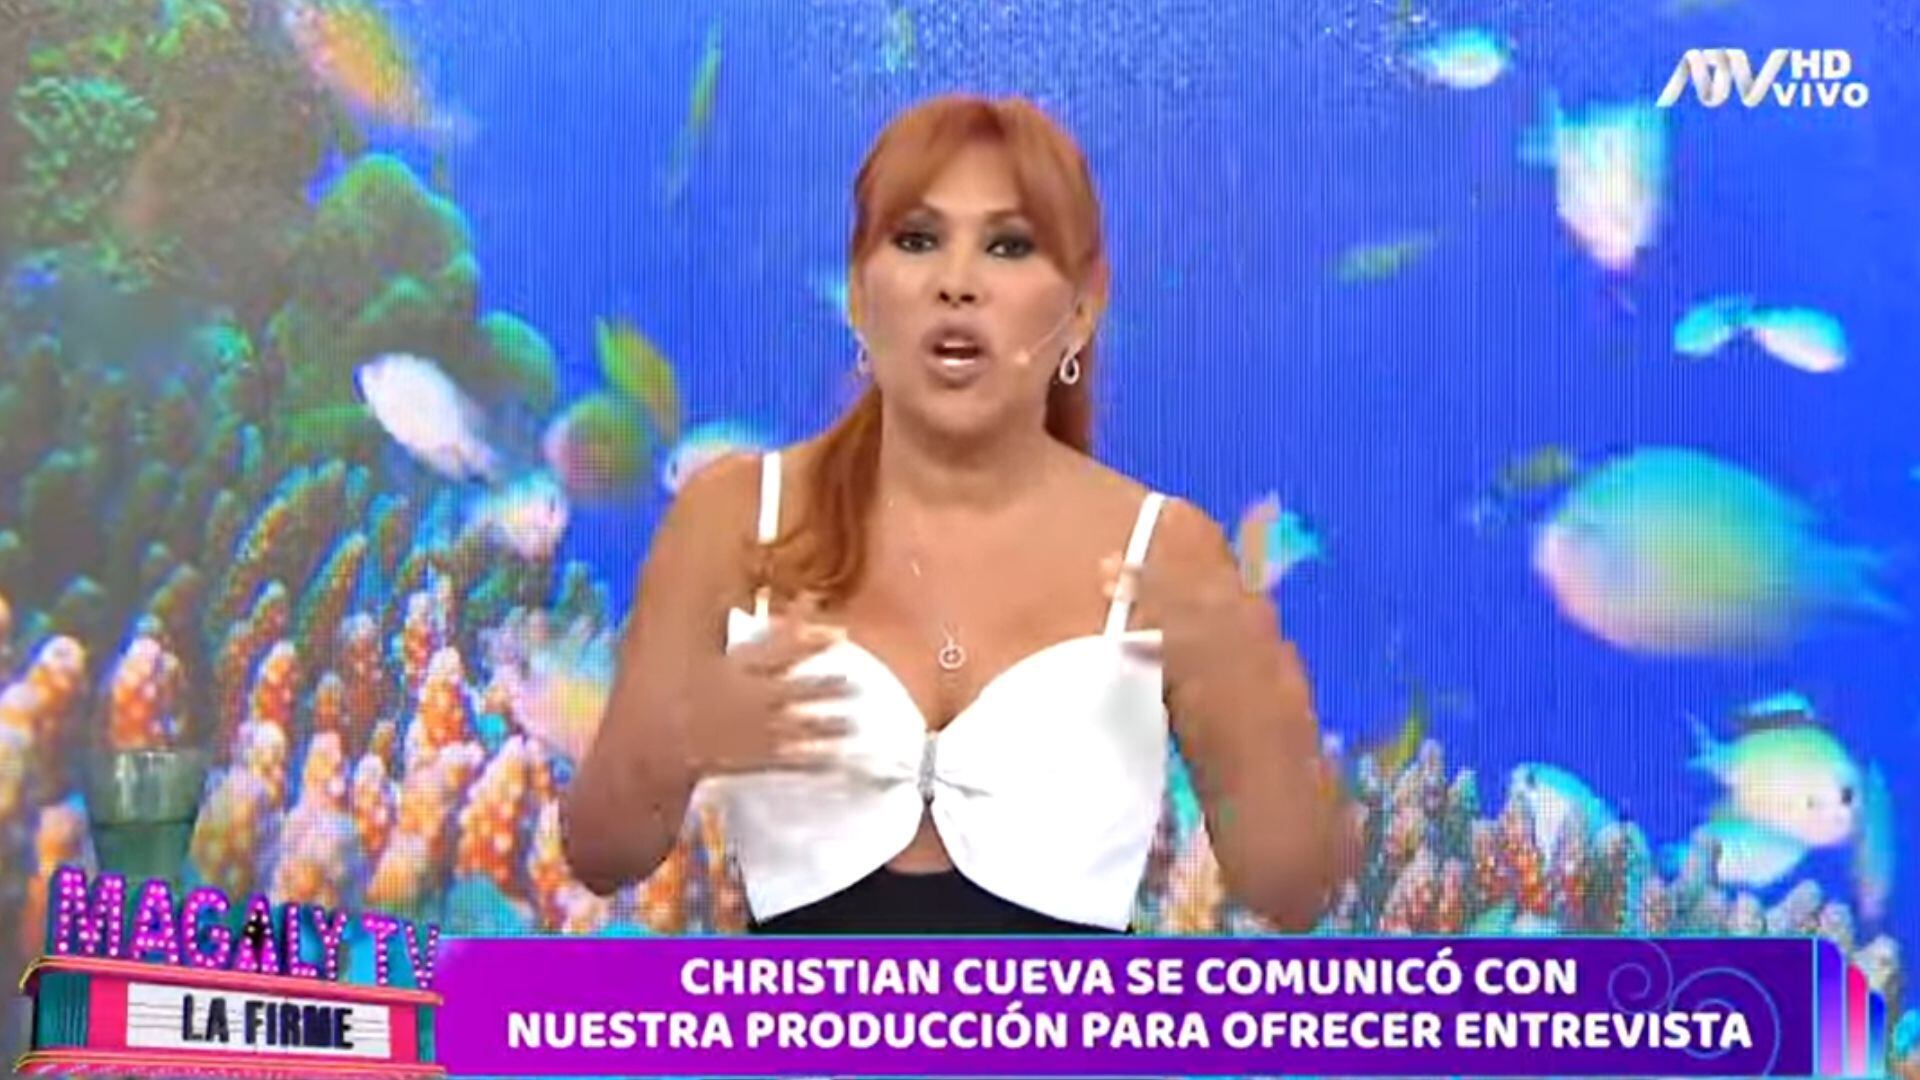 Christian Cueva estaba dispuesto a dar entrevista a Magaly Medina, pero bajo ciertas condiciones. ATV.